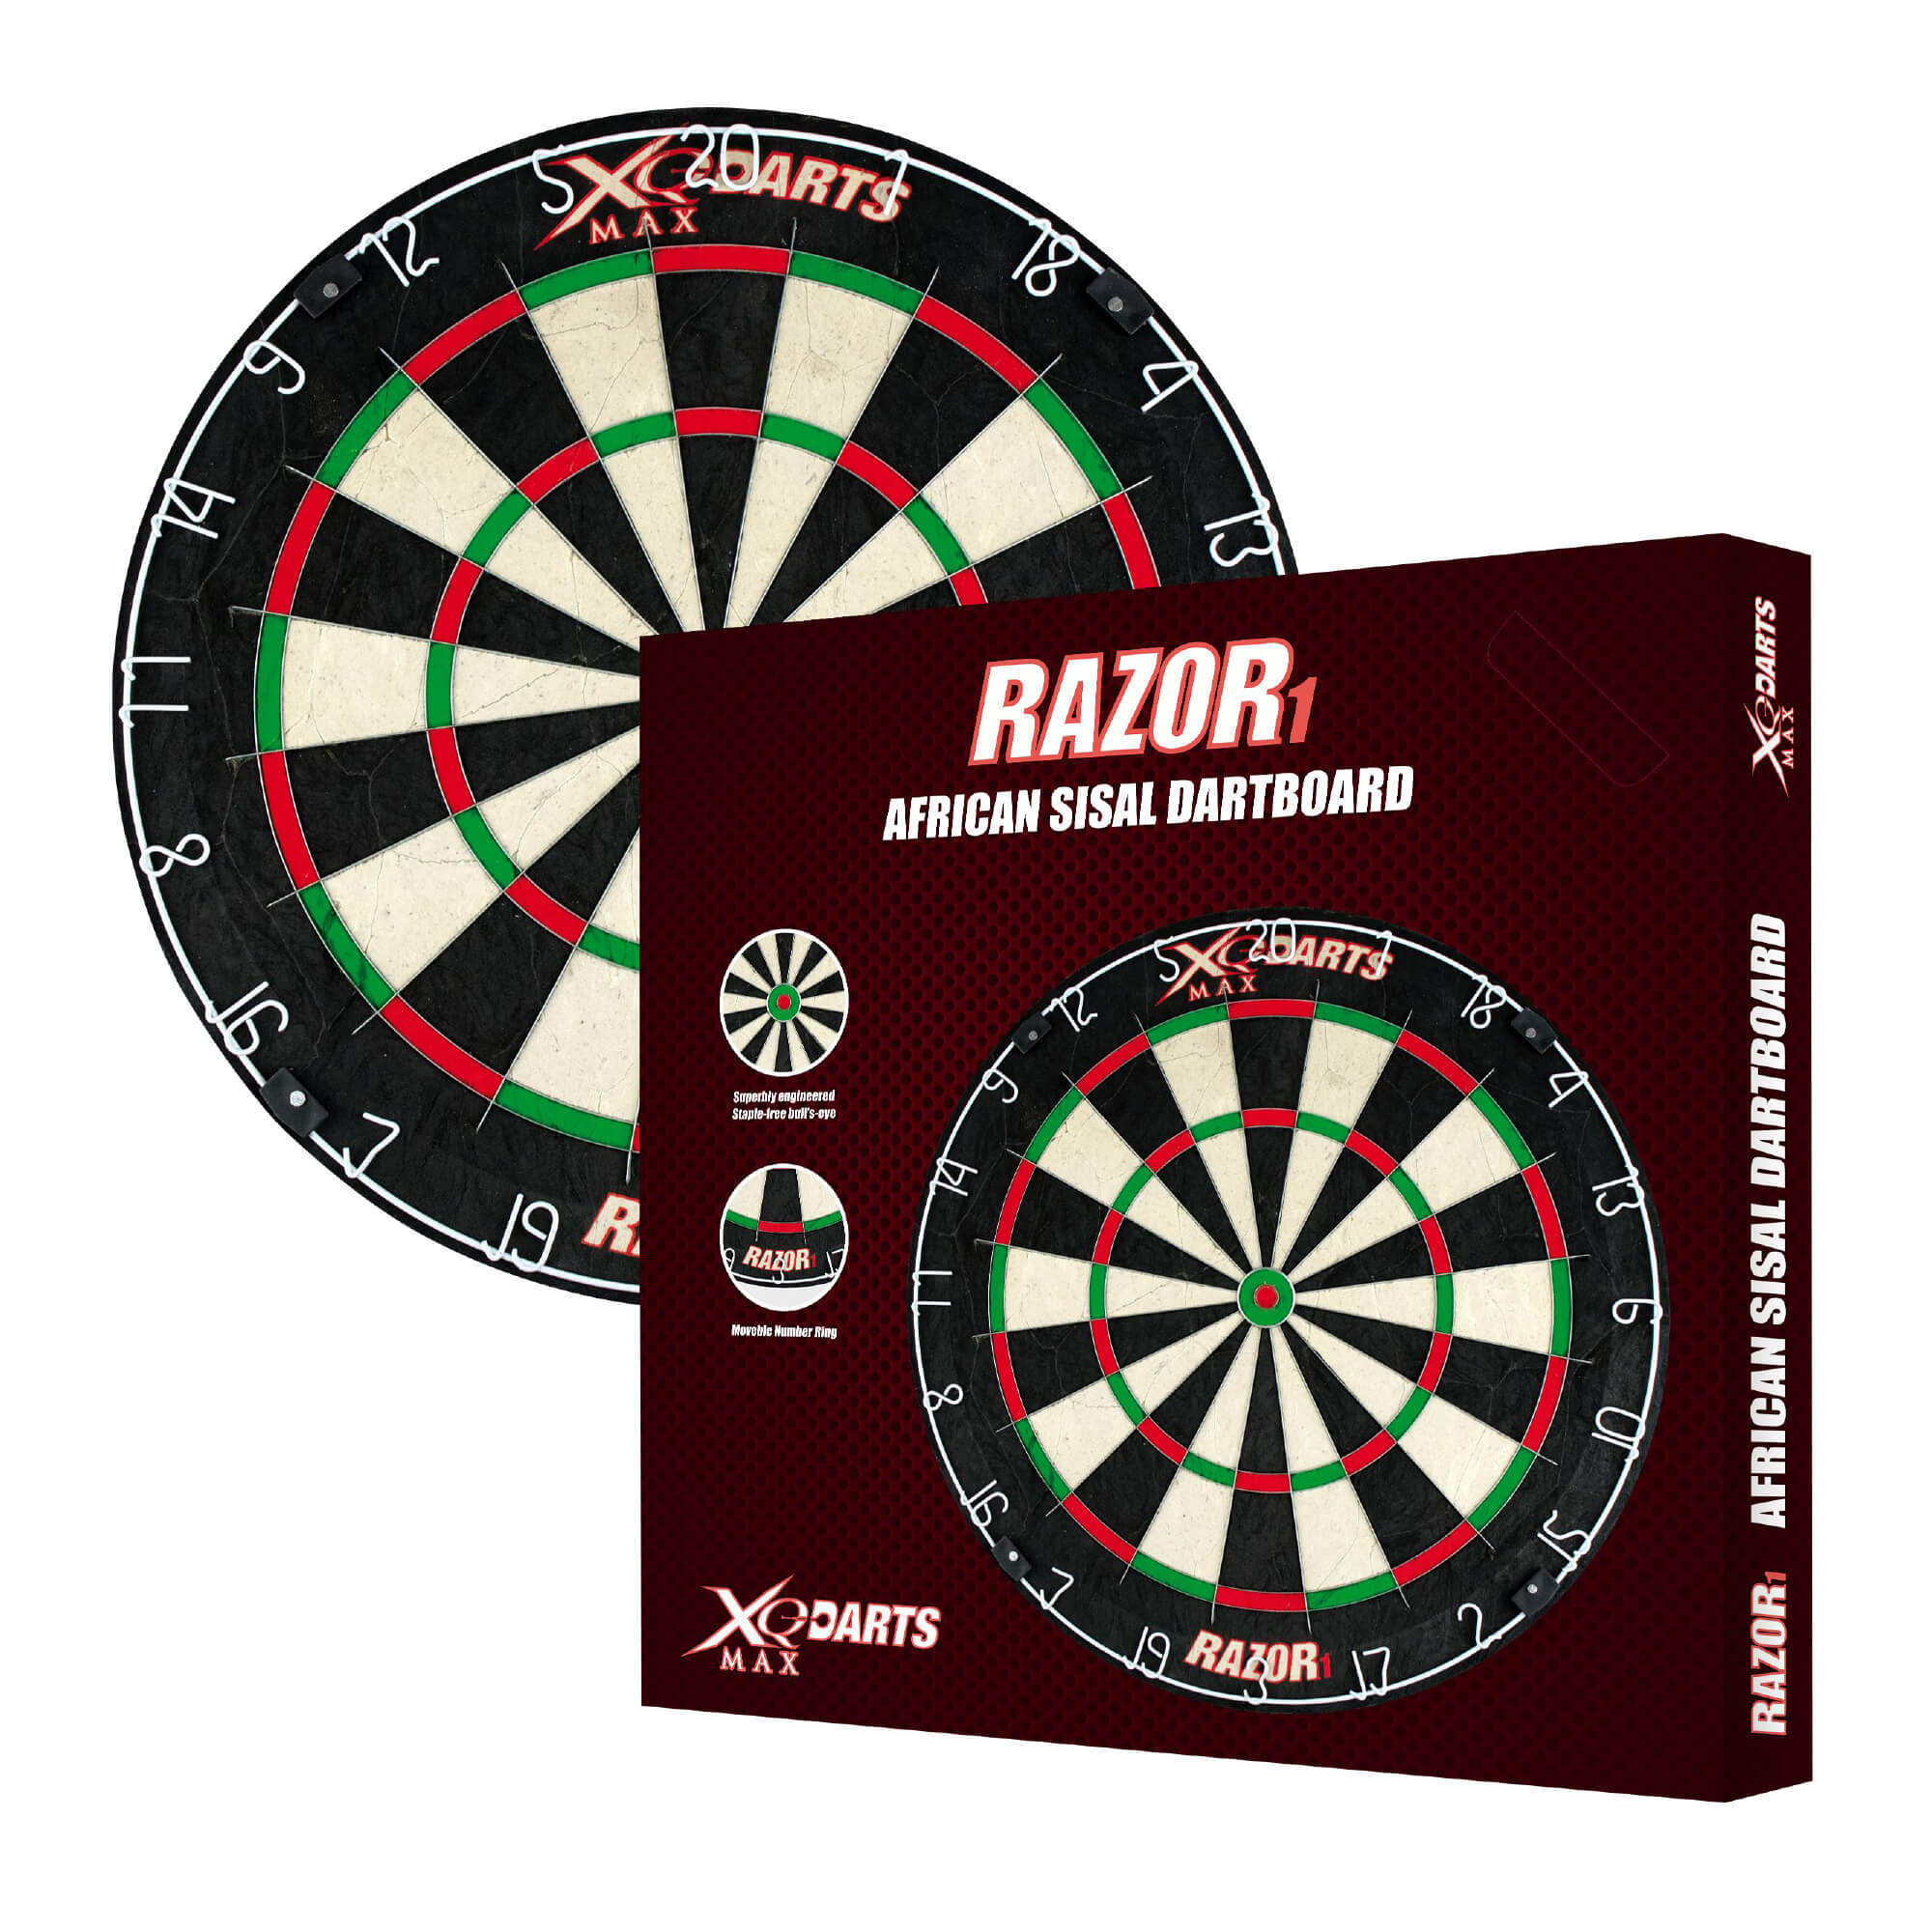 1 Max XQ Razor Darts